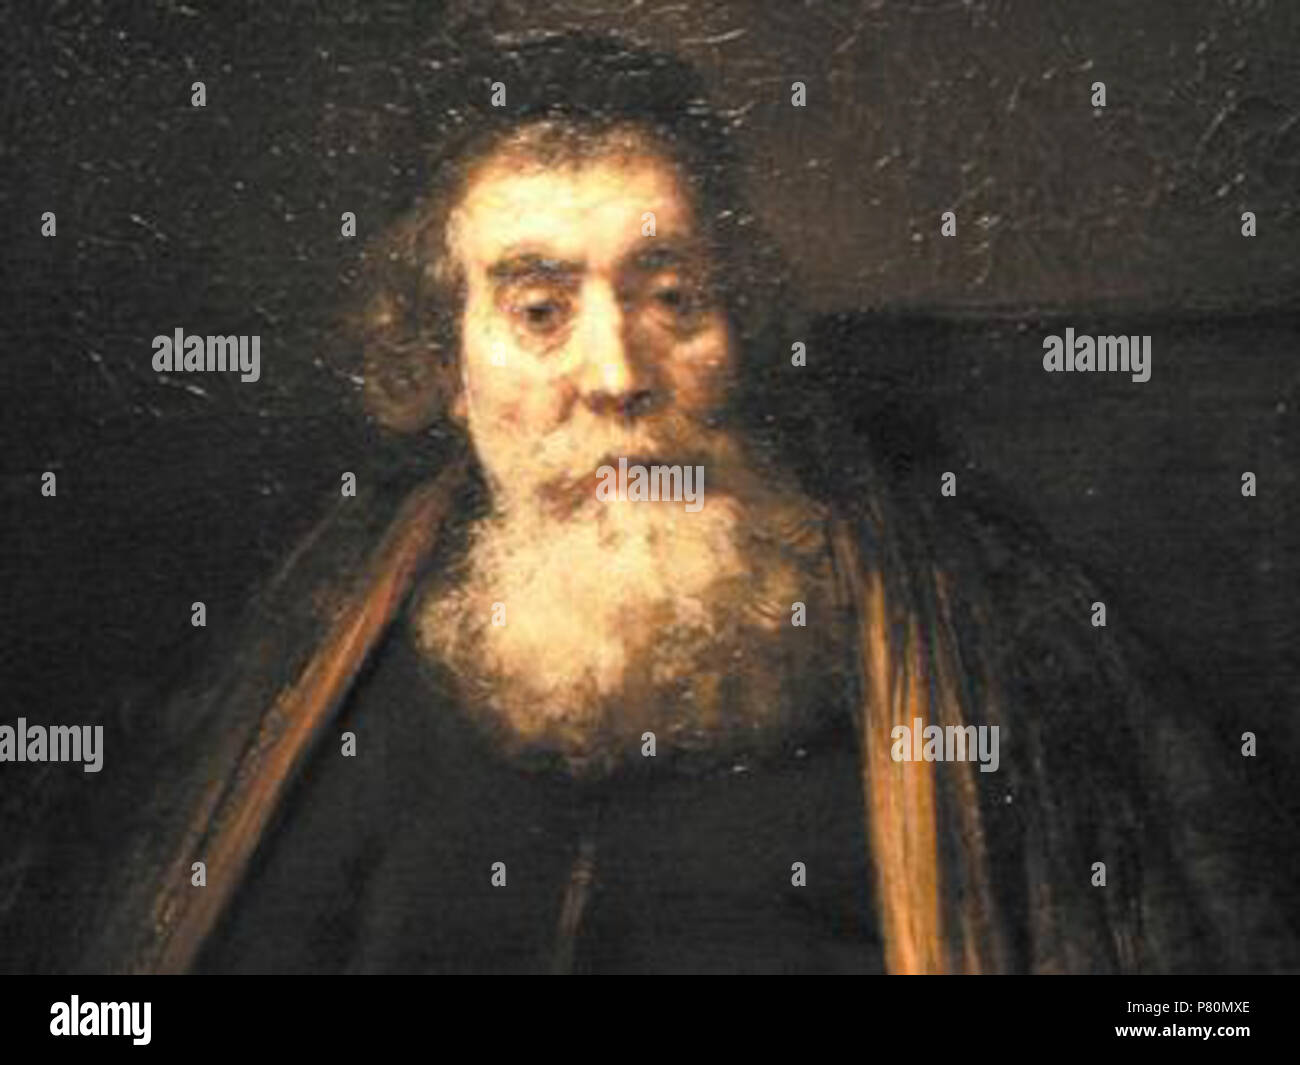 Eština: Rembrandtv portrét zejm Jana Amose Komenského, dnes ve sbírkách Galerie Uffizi. 25. April 2006 (original Upload Datum) 330 Rembrandt-Komensky 1. Stockfoto